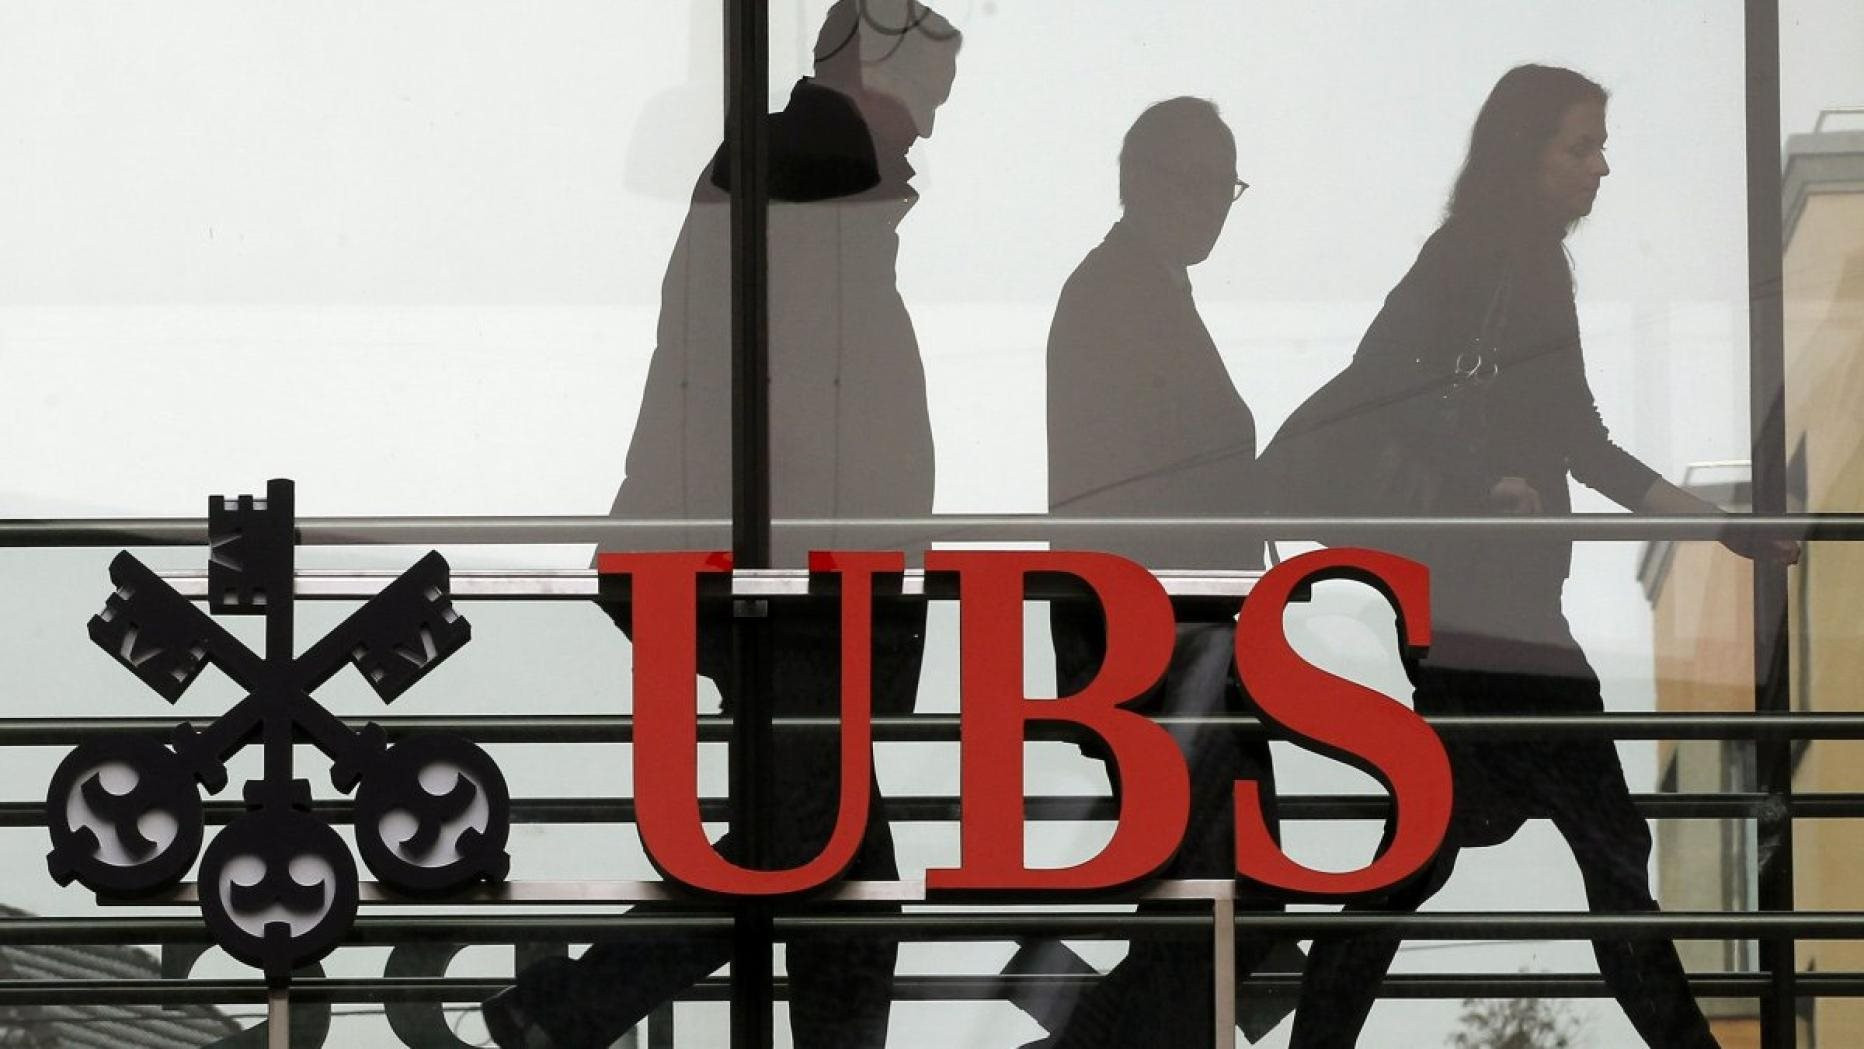 Đoán trước tương lai, Chủ tịch của UBS đã lên kế hoạch sáp nhập Credit Suisse từ nhiều năm trước: Hé lộ những toan tính sâu xa - Ảnh 1.